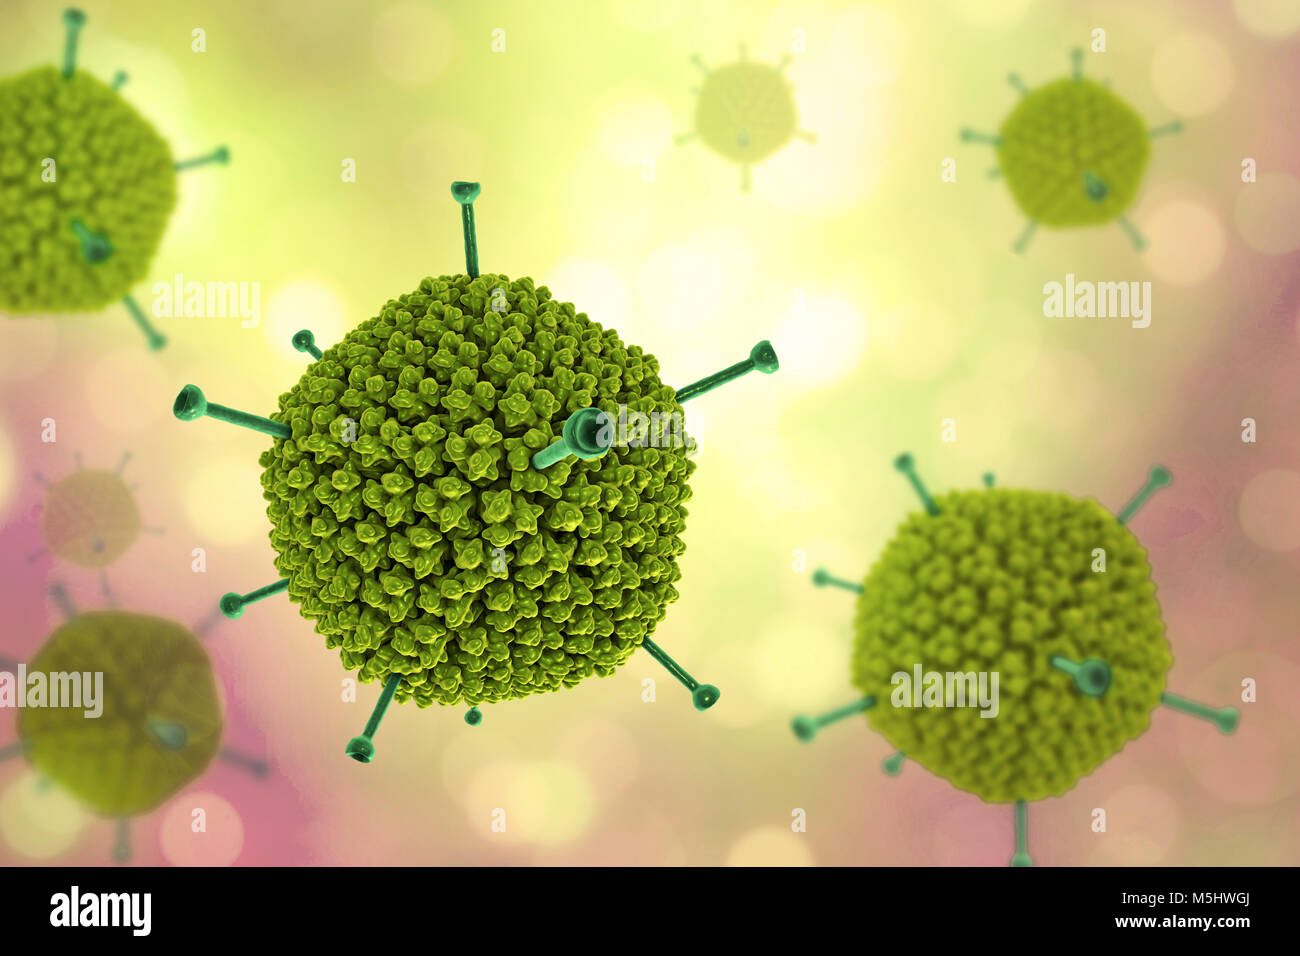 Struttura di adenovirus, computer illustrazione che mostra la struttura di superficie del virus esterna del rivestimento di proteina (capside). Molti gli adenovirus infettano il tratto respiratorio, causando il raffreddore comune di sintomi simili, e infettare anche gli occhi e gut, in particolare per i bambini. Il giallo sporgenze sono note come fibre di pentone e si trovano in corrispondenza di ciascuno dei vertici 12 del capside. Ciascuna fibra è ribaltata con proteine che permettono al virus di entrare nella sua cella di bersaglio. Foto Stock